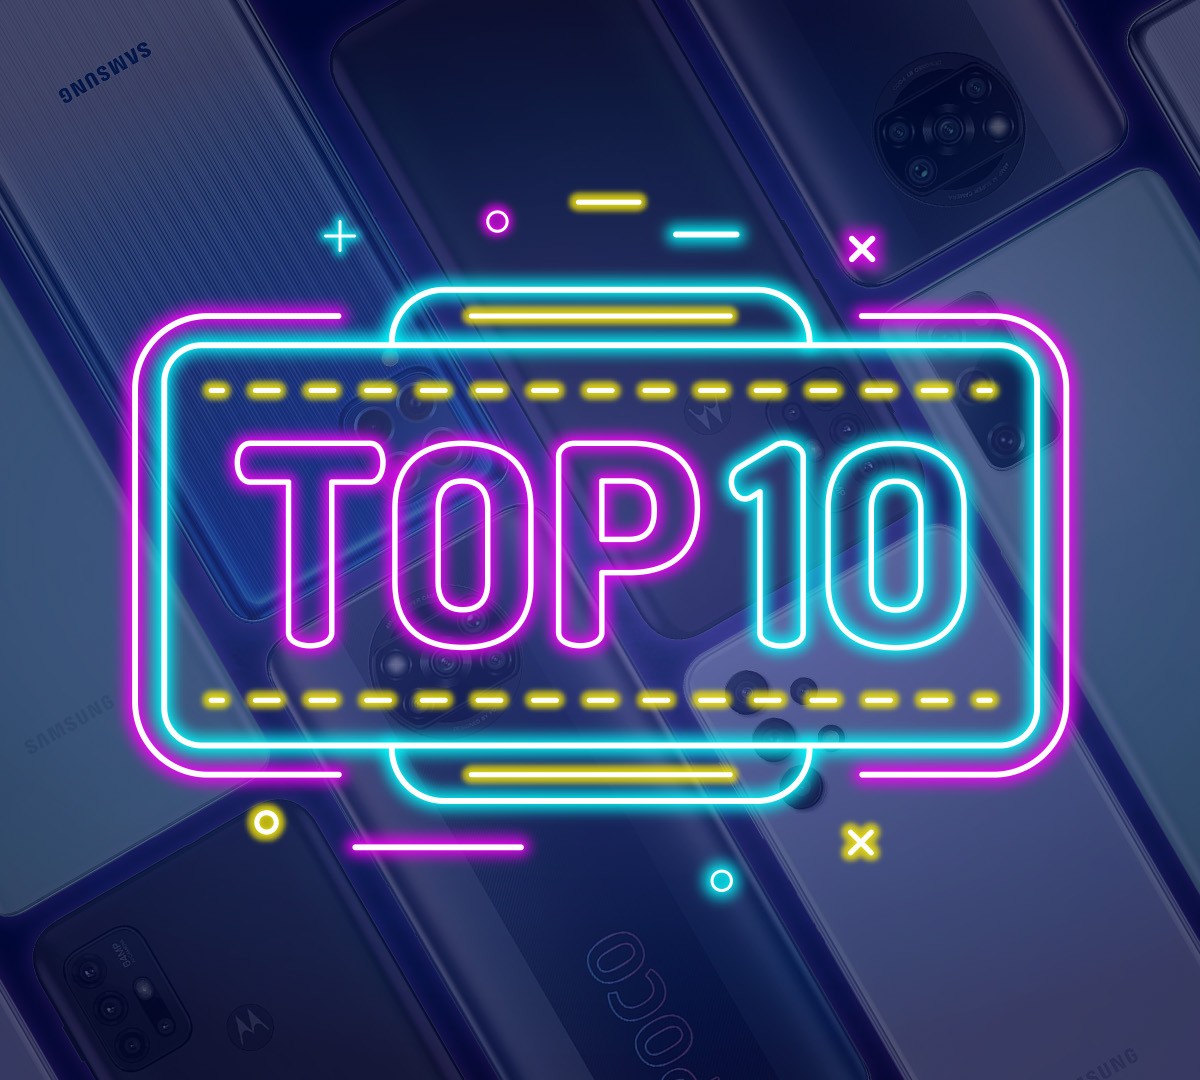 Os 10 celulares mais populares no Comparador do TecMundo (04/02/20) -  TecMundo